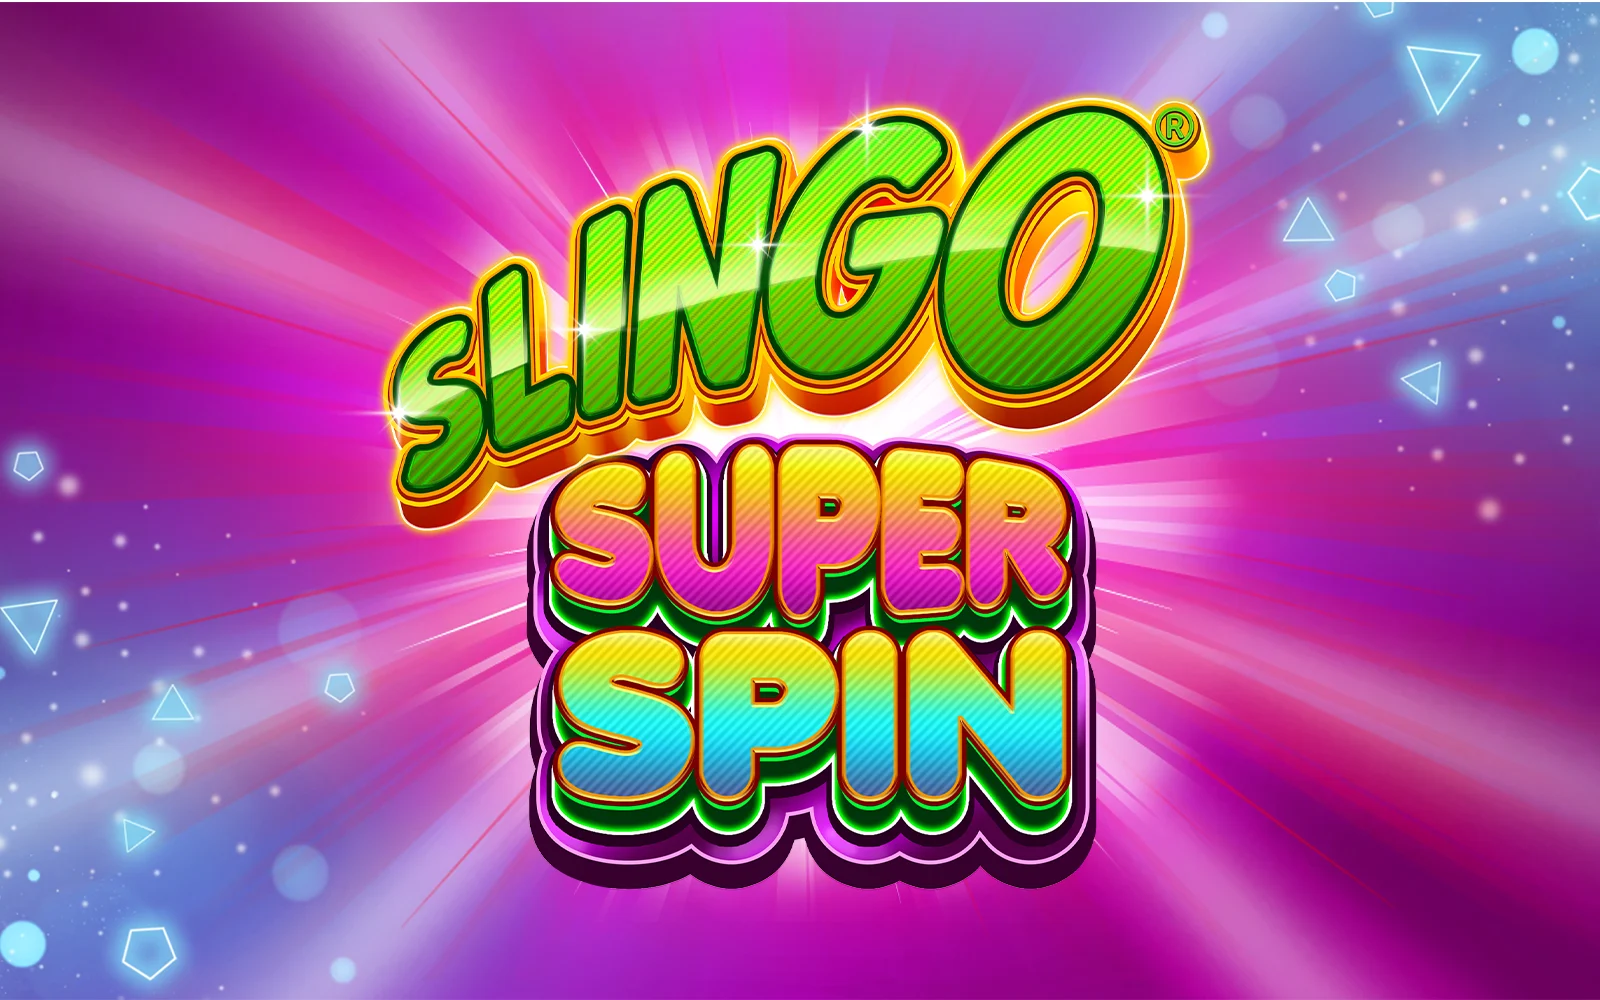 Gioca a Slingo Super Spin sul casino online Starcasino.be